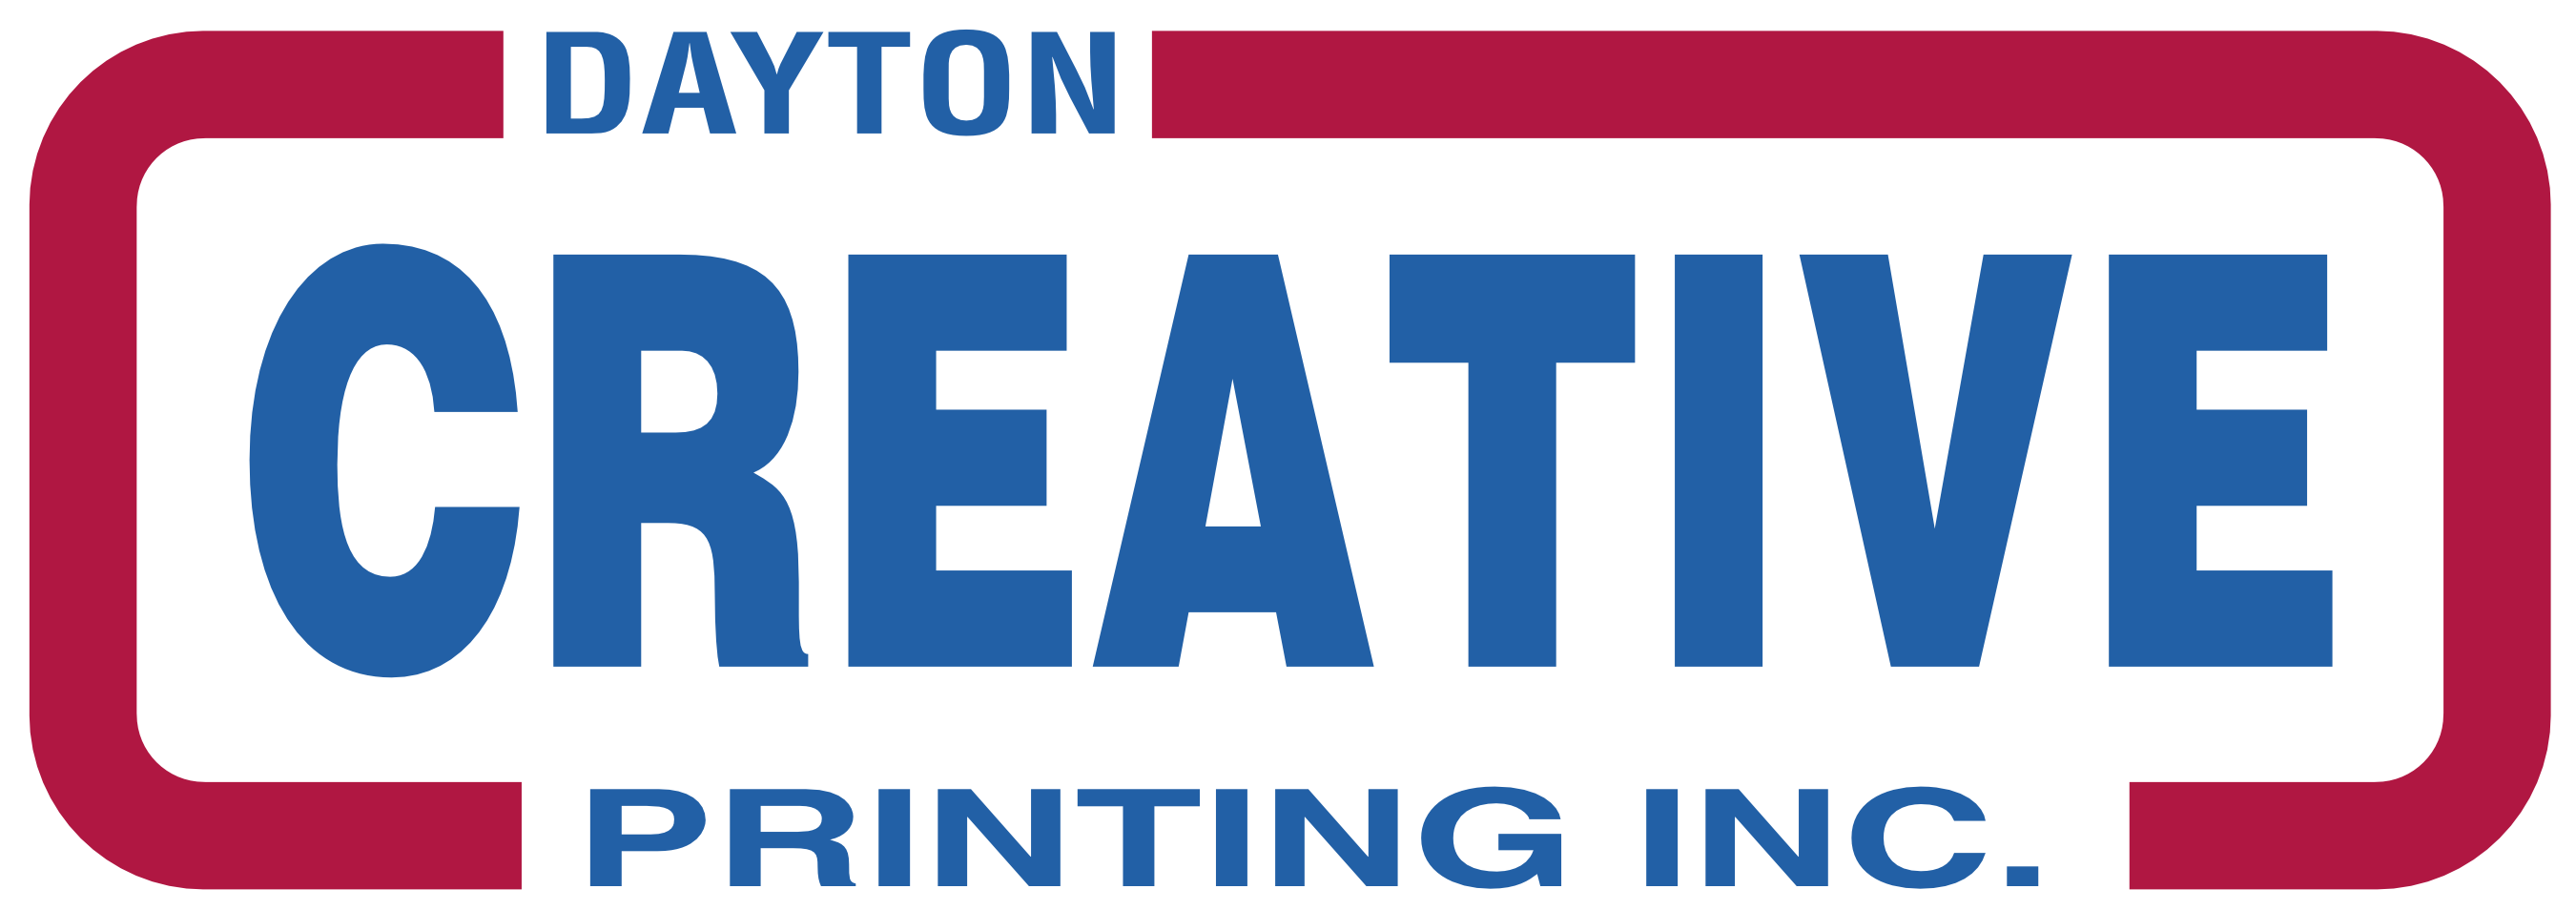 Dayton Creative Printing Online Ordering